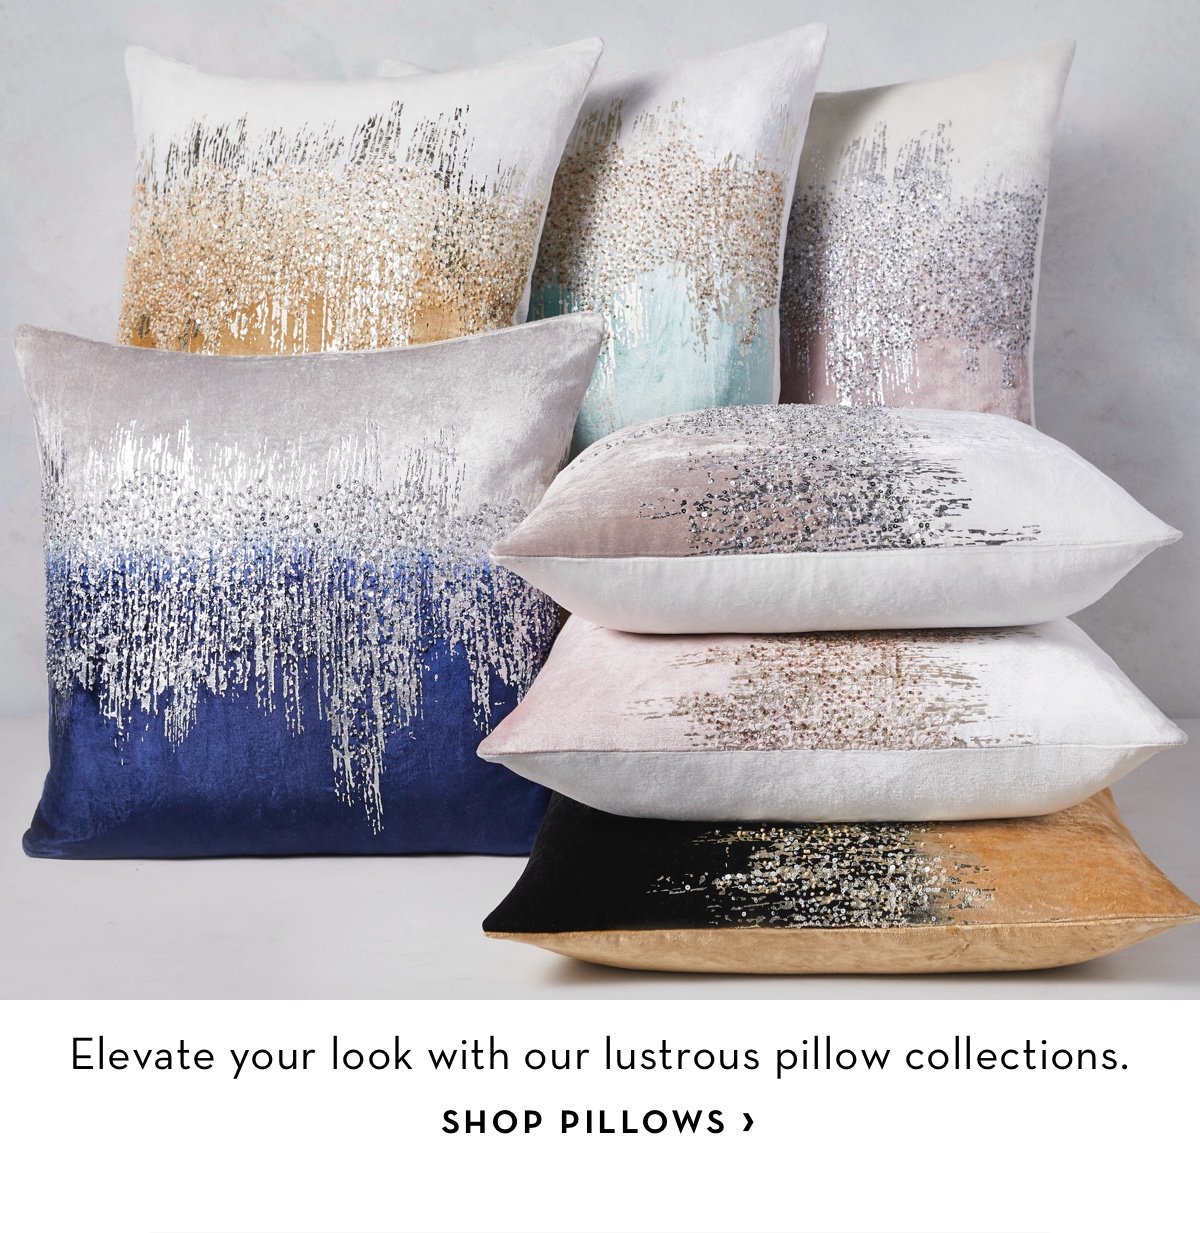 shop pillows